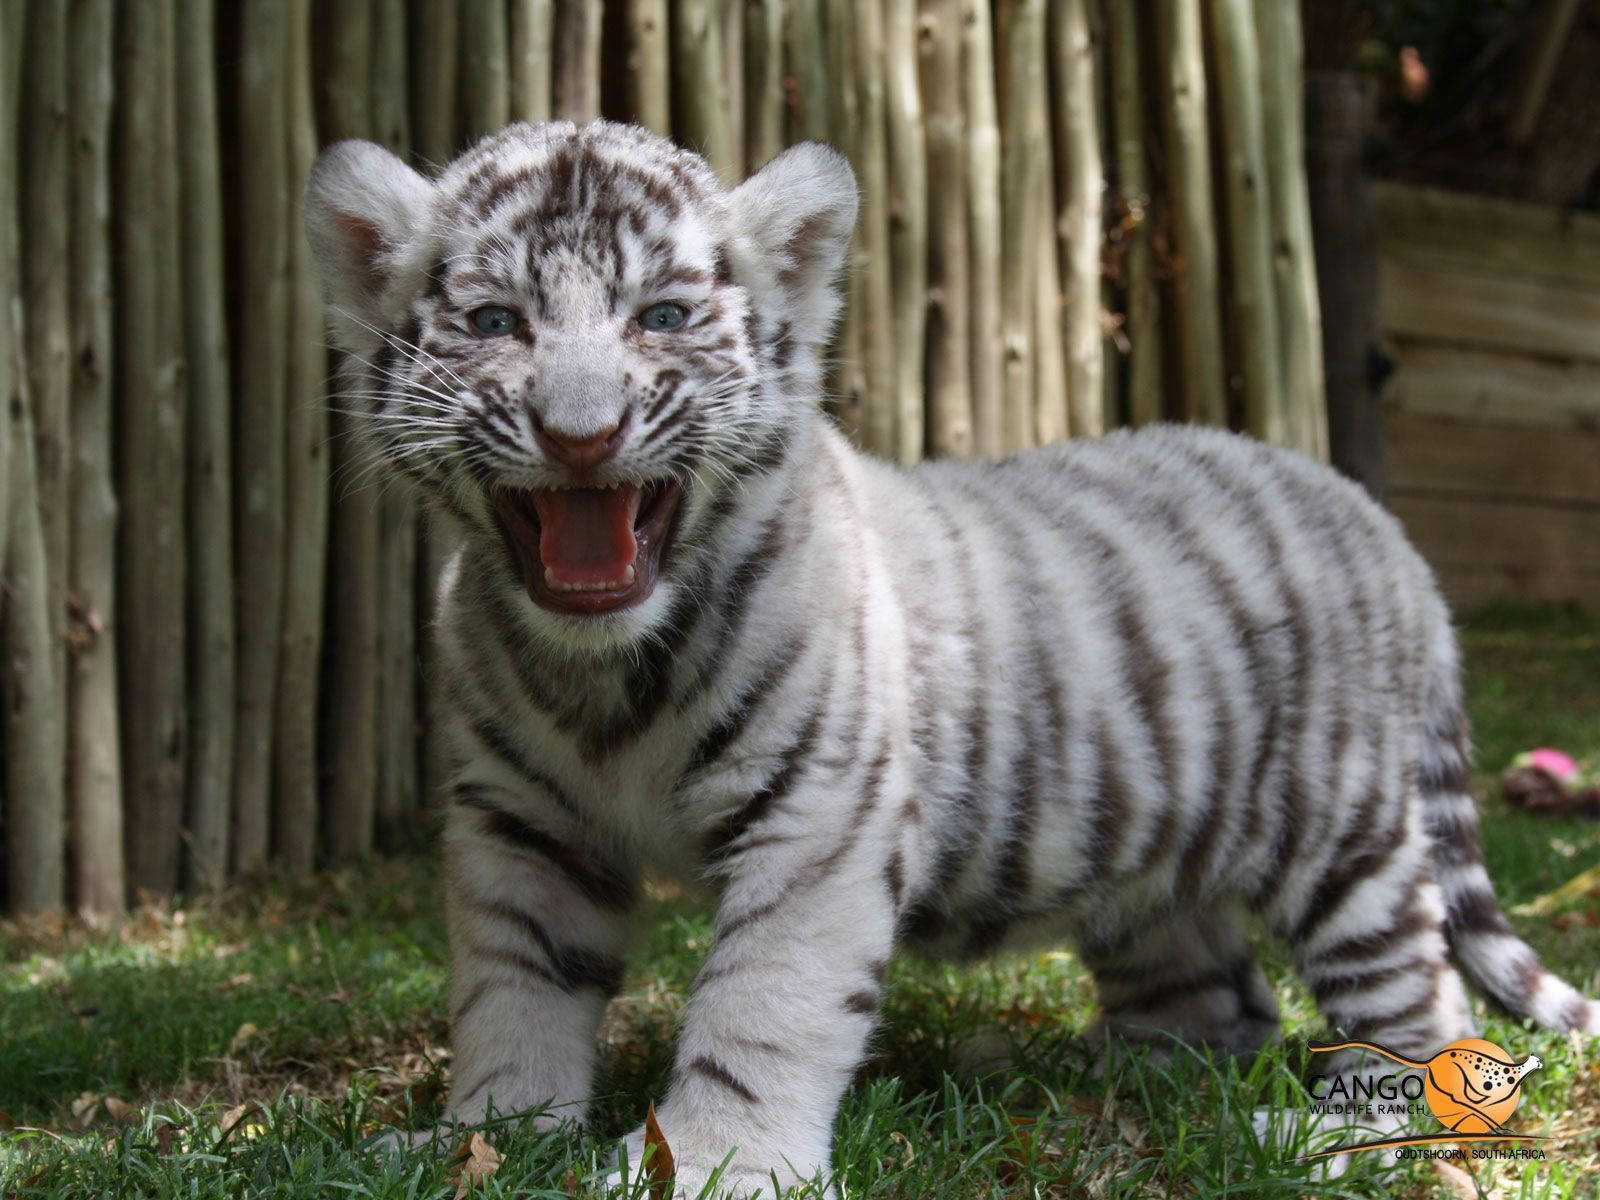 Awe-inspiring Baby White Tiger Expressing Miniature Roar